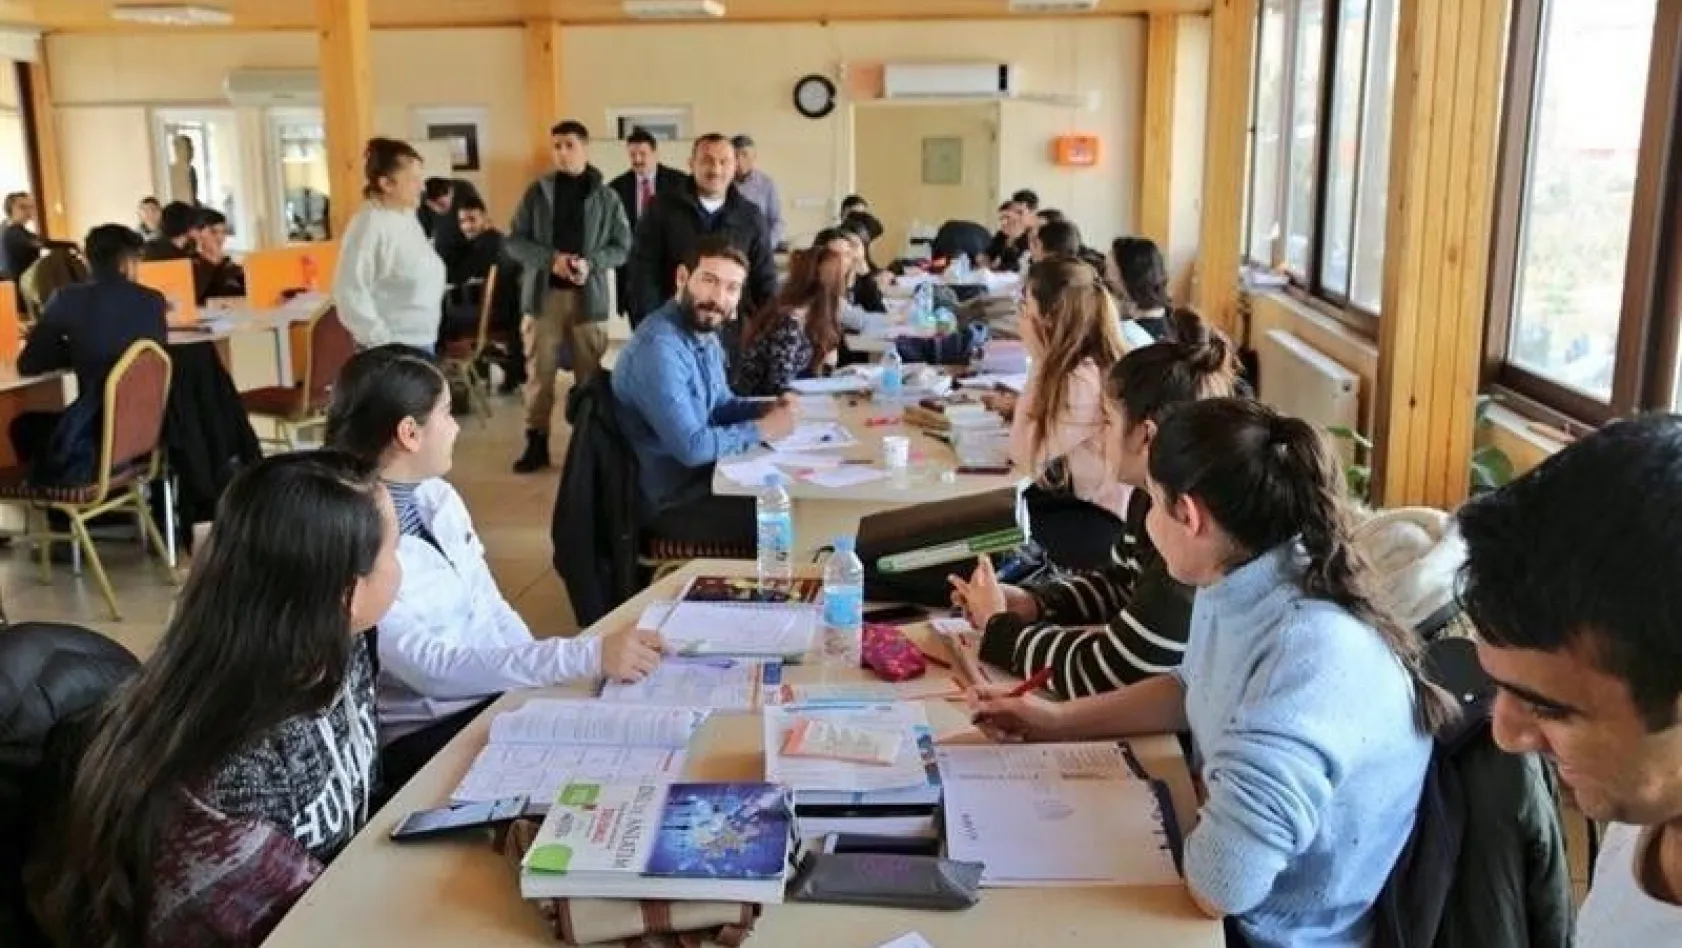 Tunceli Belediyesi kütüphanesi yenilendi
